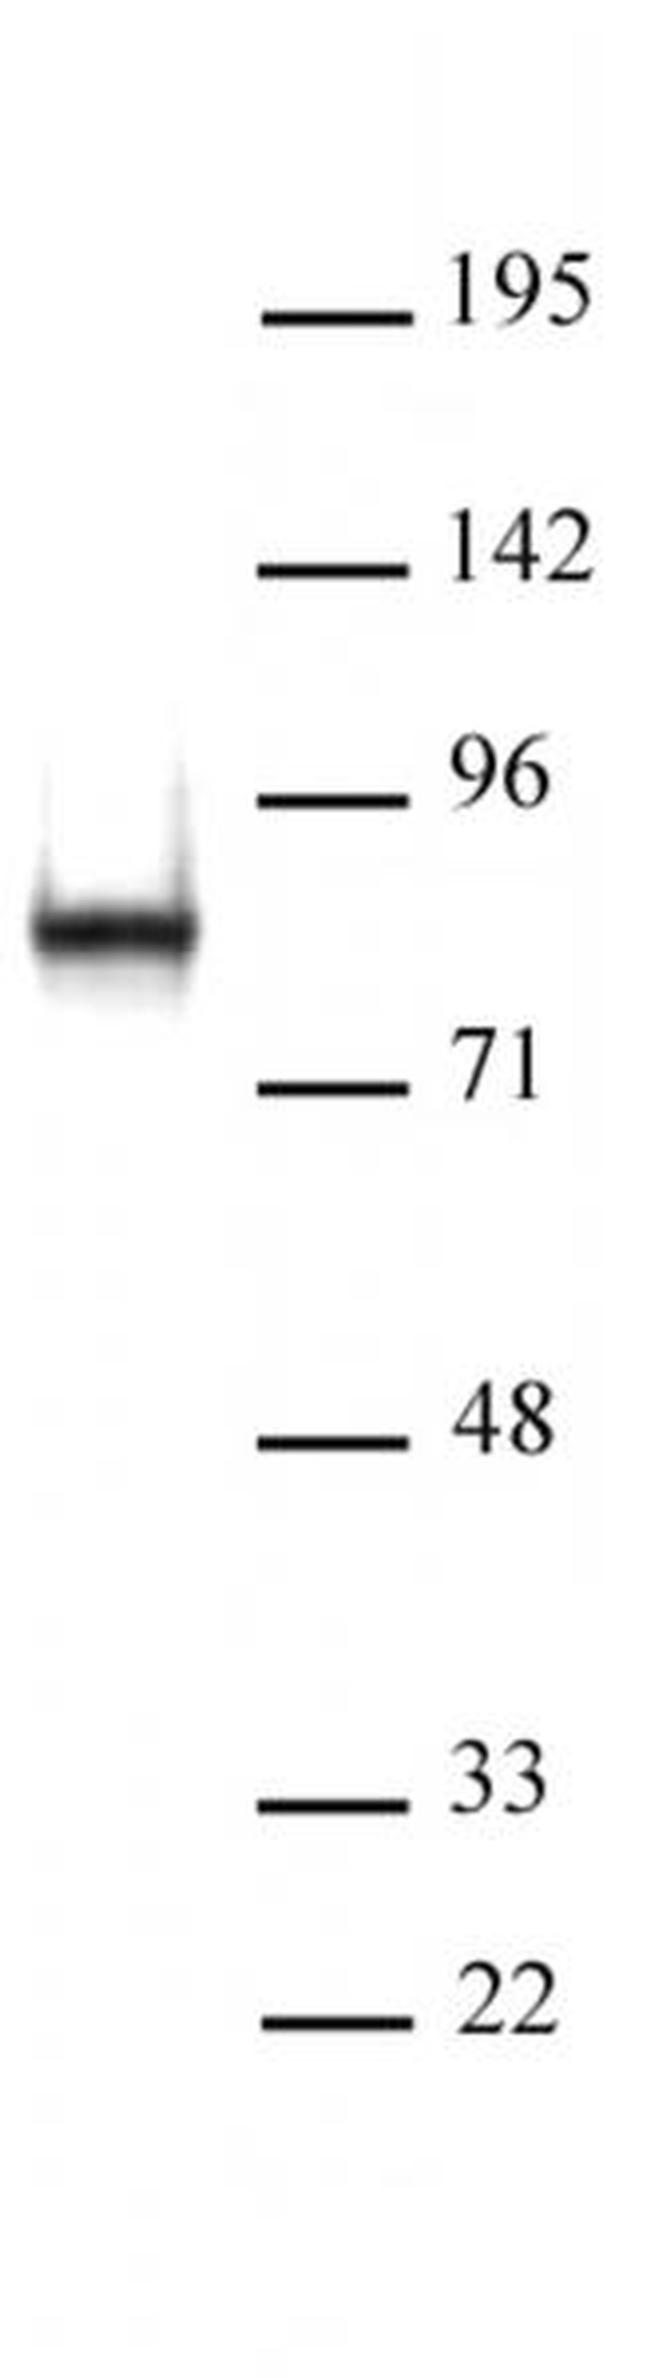 L3MBTL2 Antibody in Western Blot (WB)